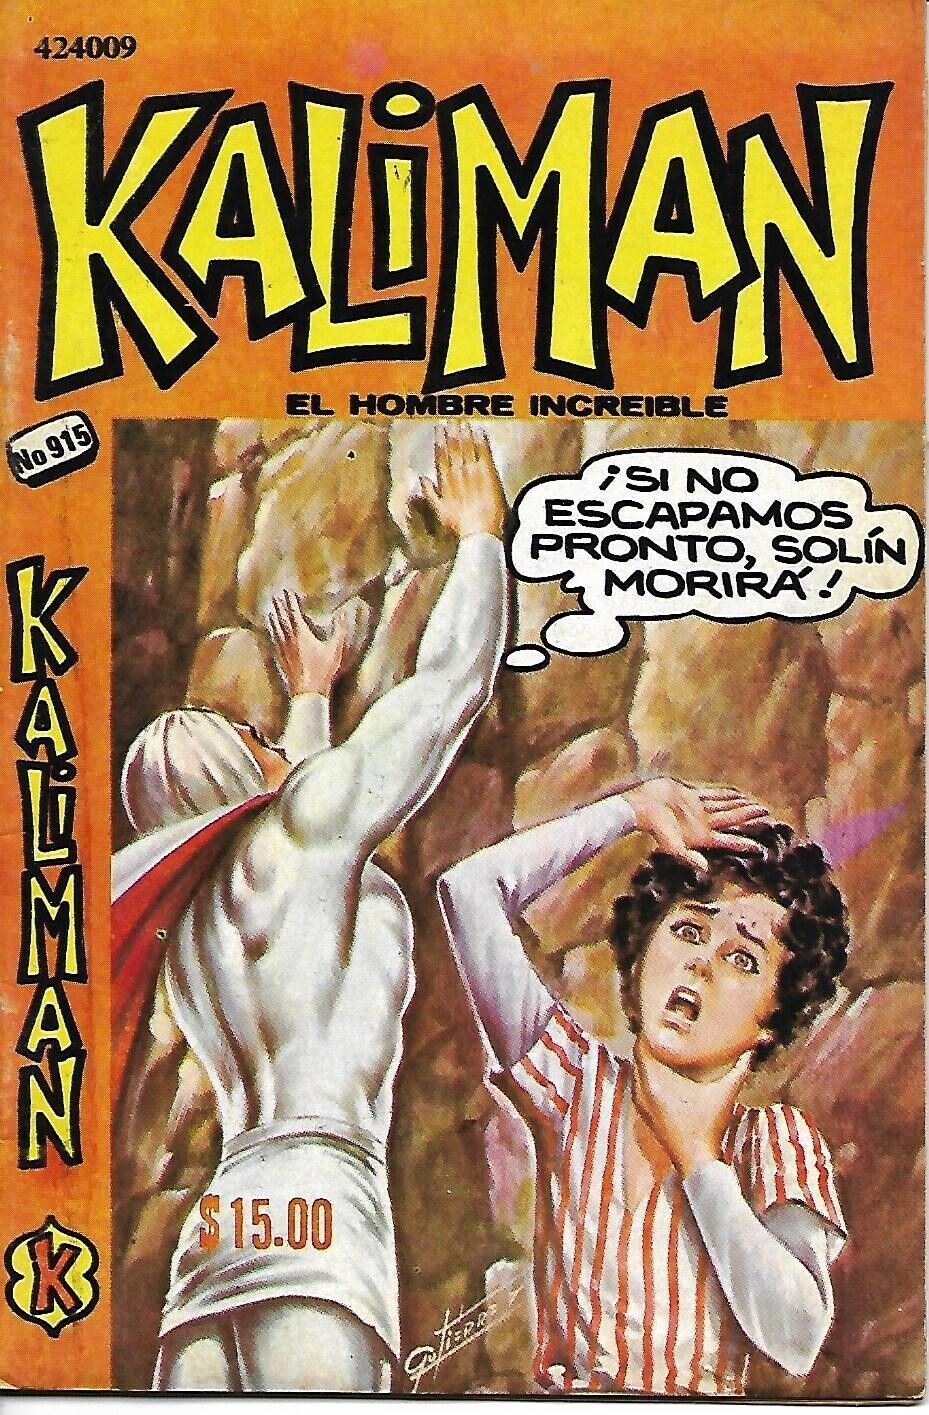 Kaliman El Hombre Increible #915 - Junio 10, 1983 - Mexico